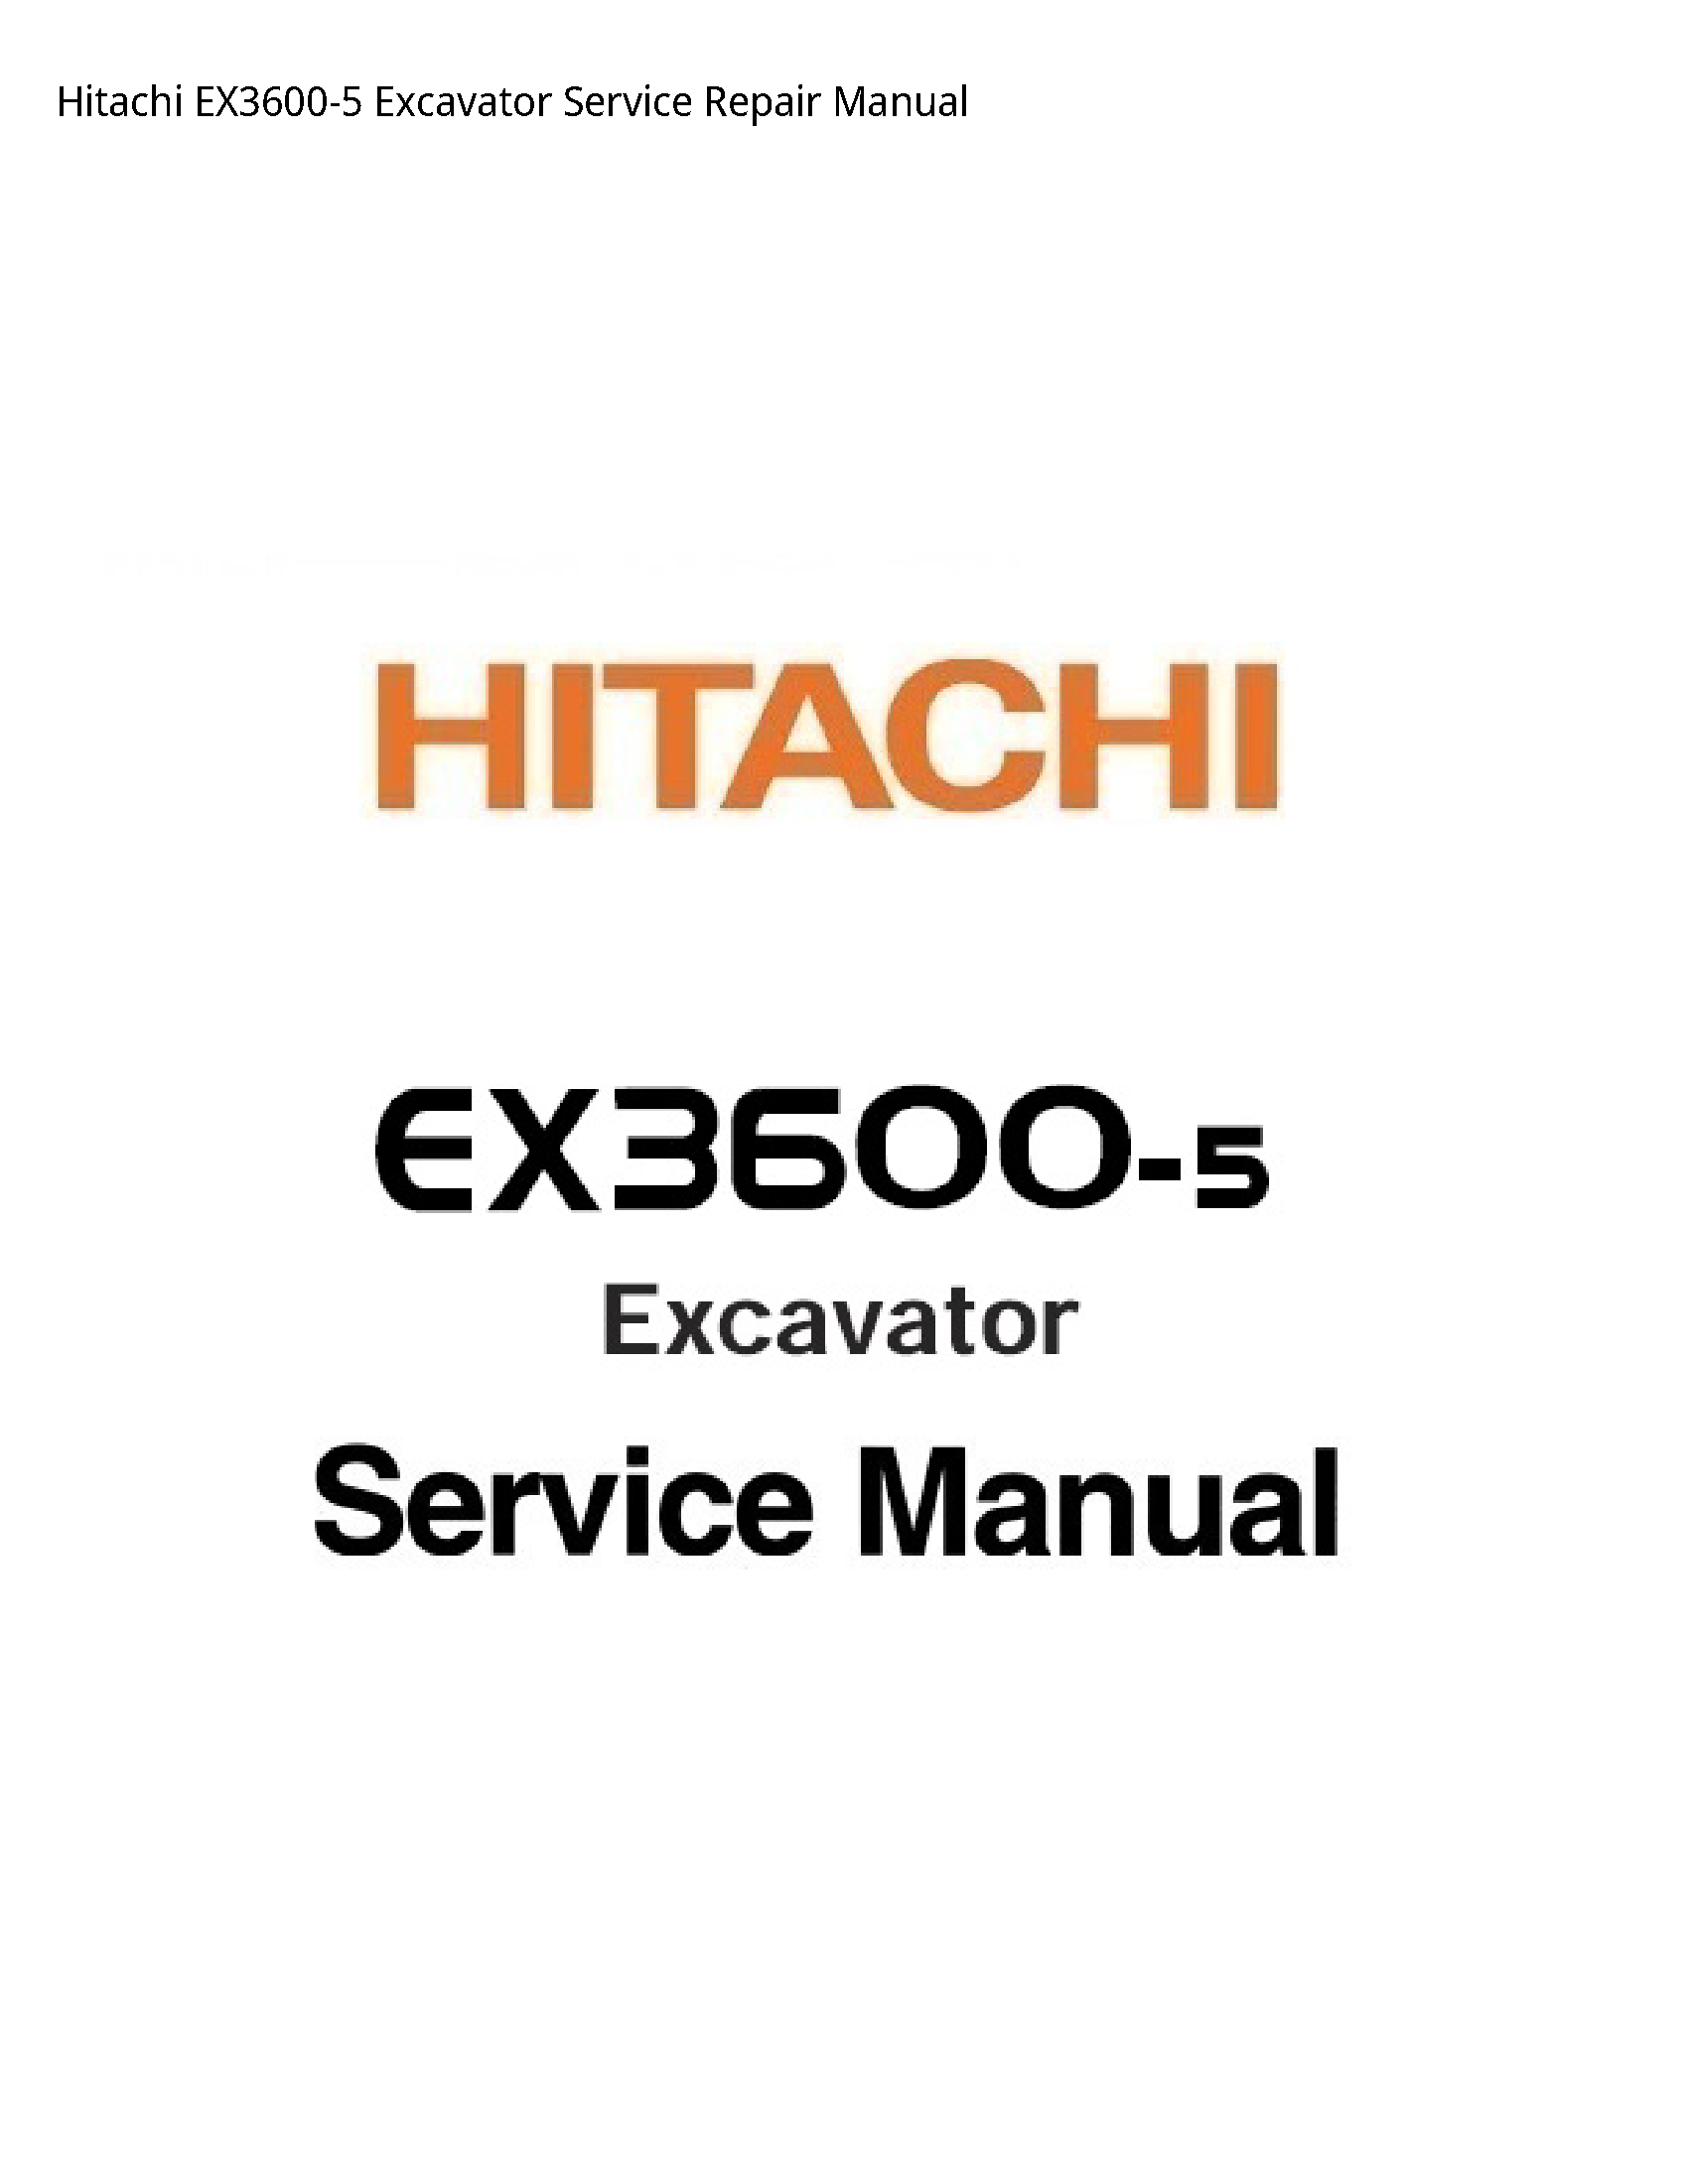 Hitachi EX3600-5 Excavator manual